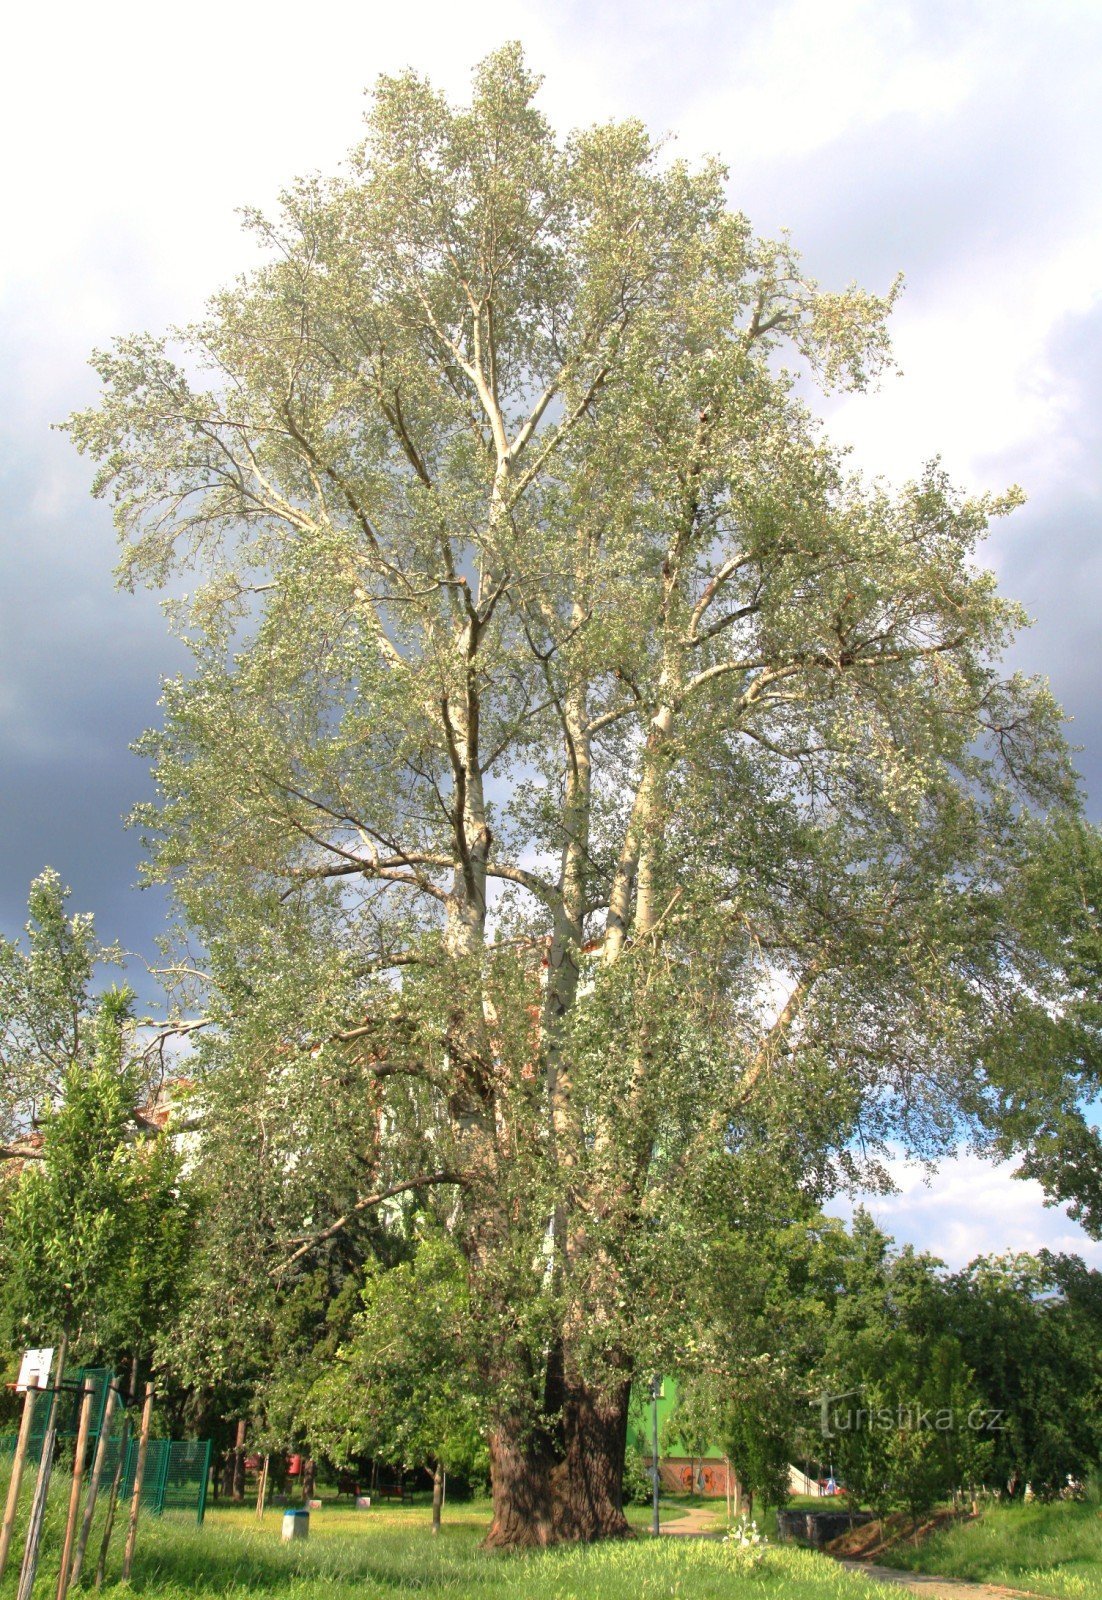 Brno-Židenice - white poplar